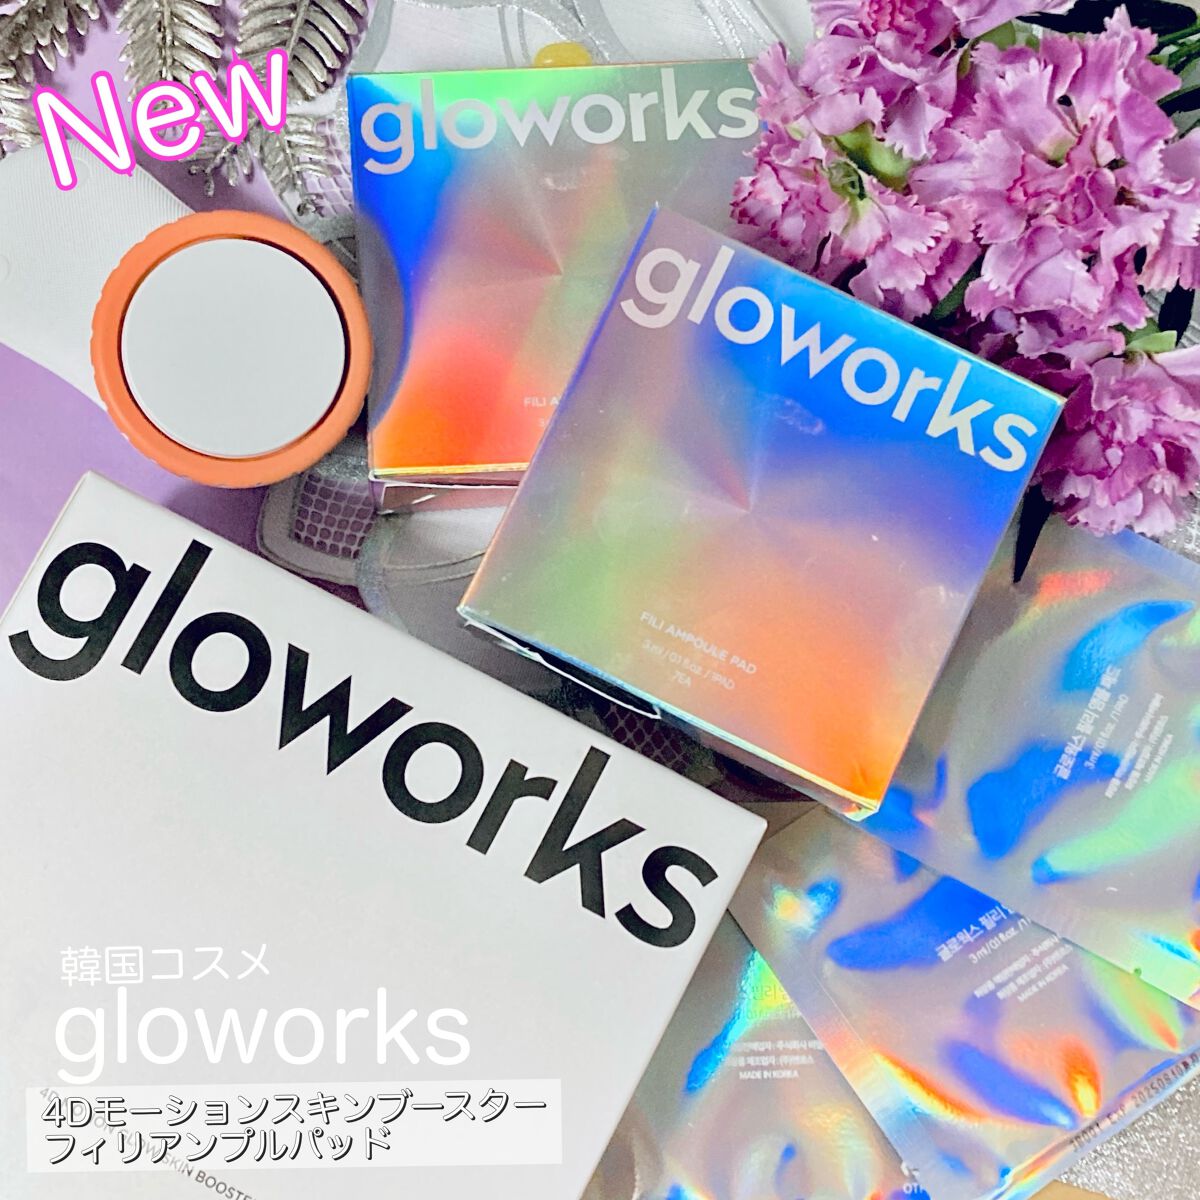 gloworks 4Dモーションスキンブースター フィリアンプルパッド 通販